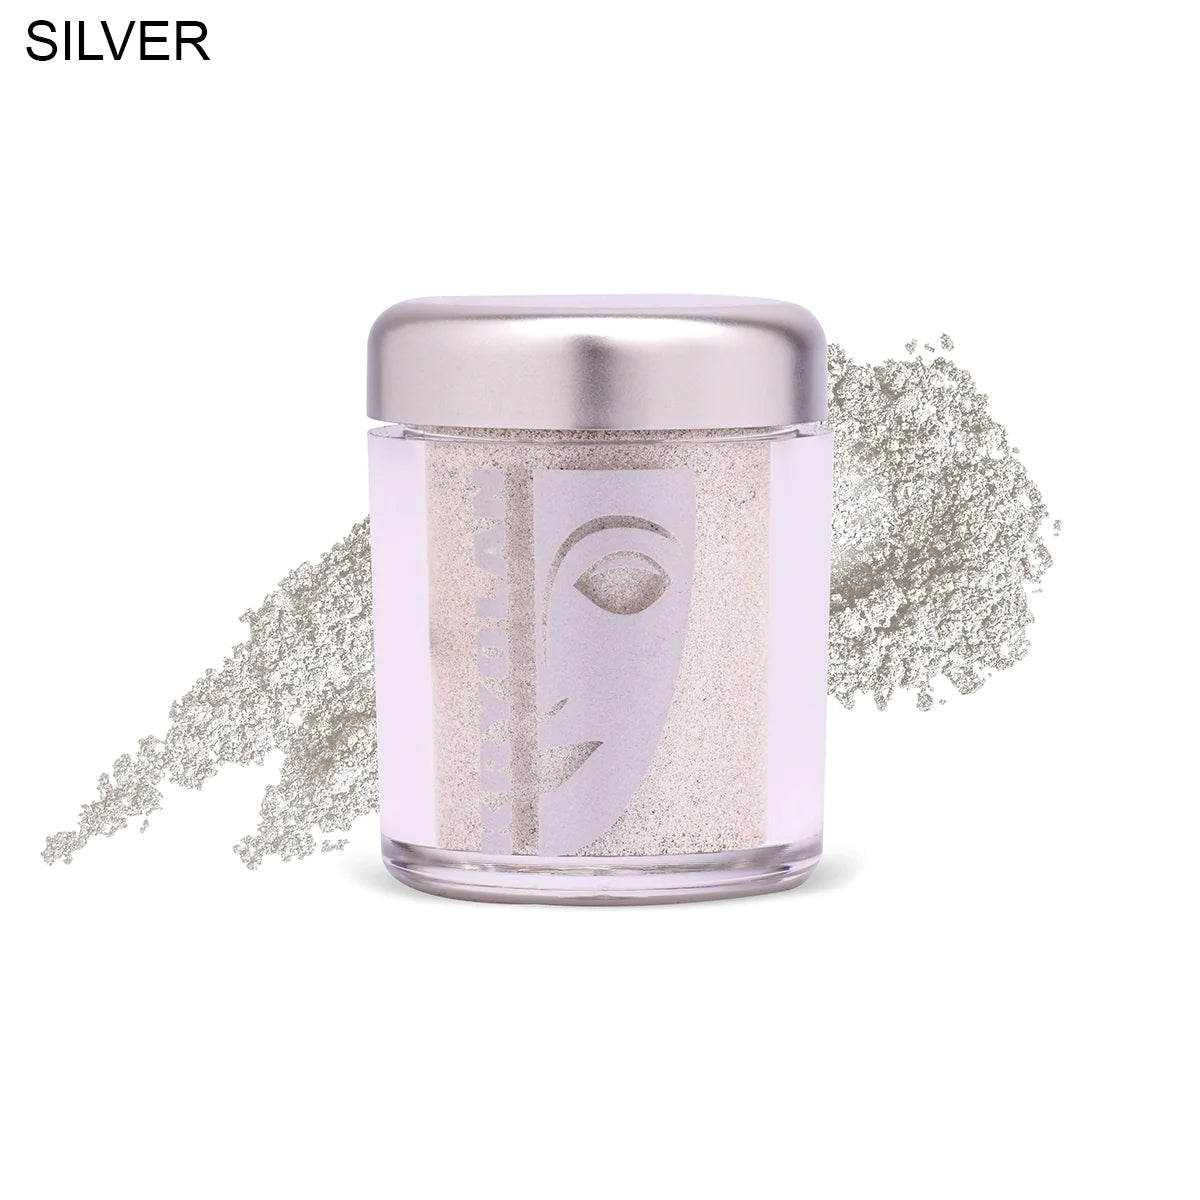 Buy  Kryolan - HD Living Color - Silver at Best Price Online in Pakistan